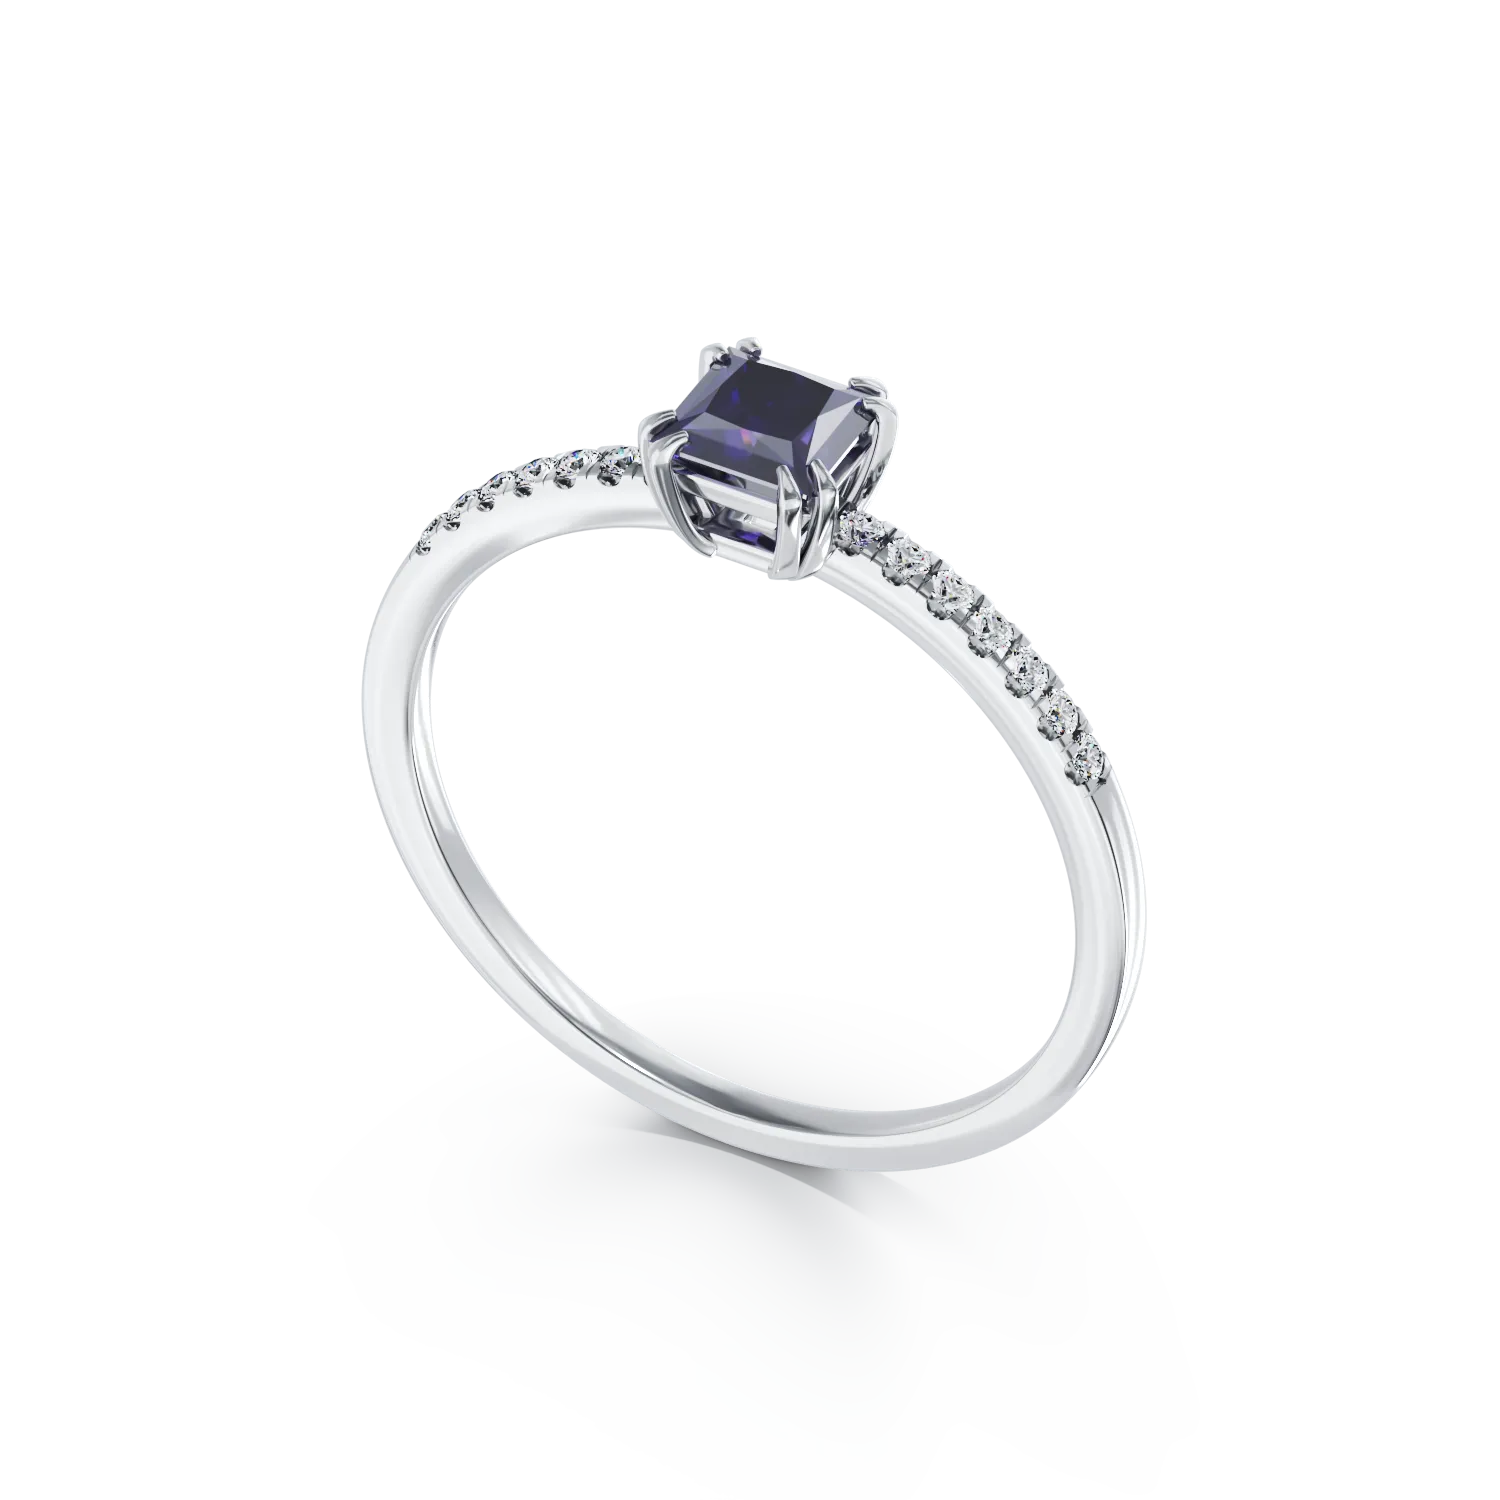 18K fehérarany eljegyzési gyűrű 0.4ct tanzanittal és 0.05ct gyémántokkal